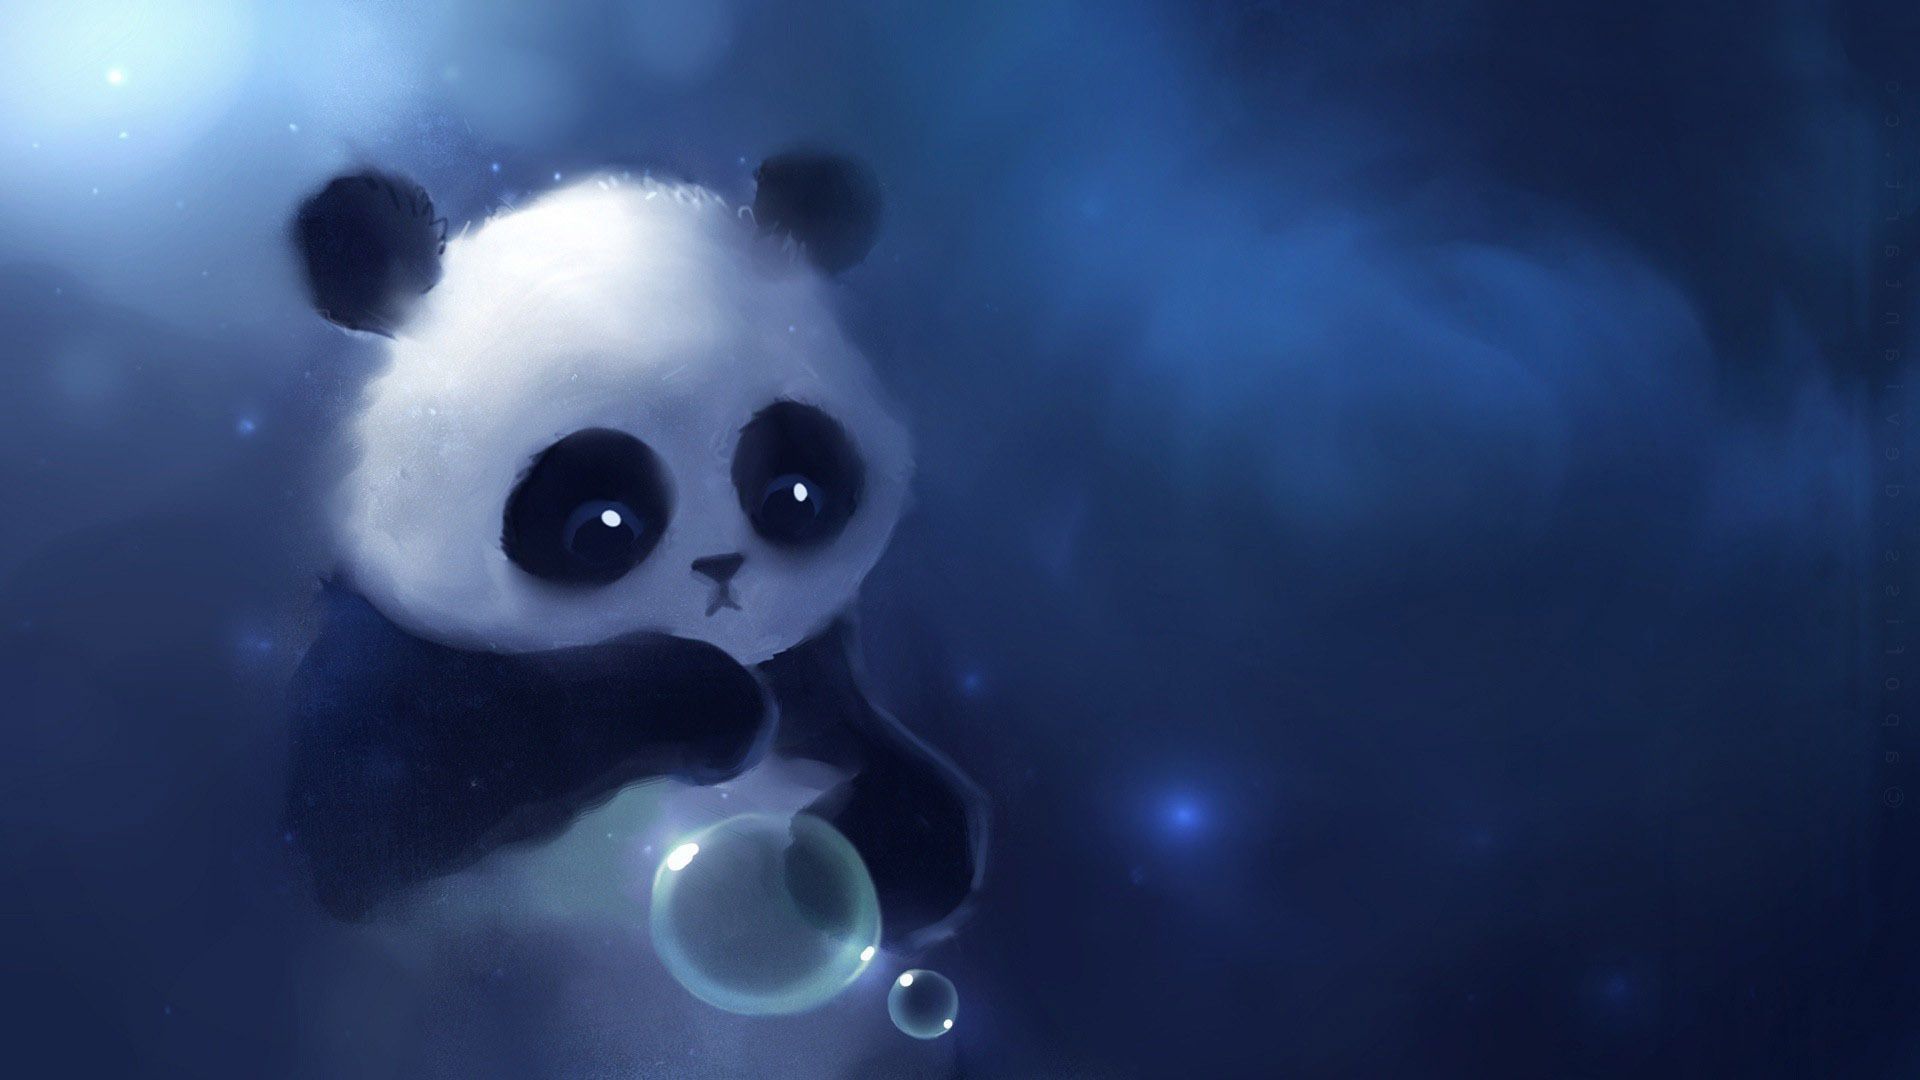 Free download Download Cute Panda Wallpaper Tumblr 1920x1080